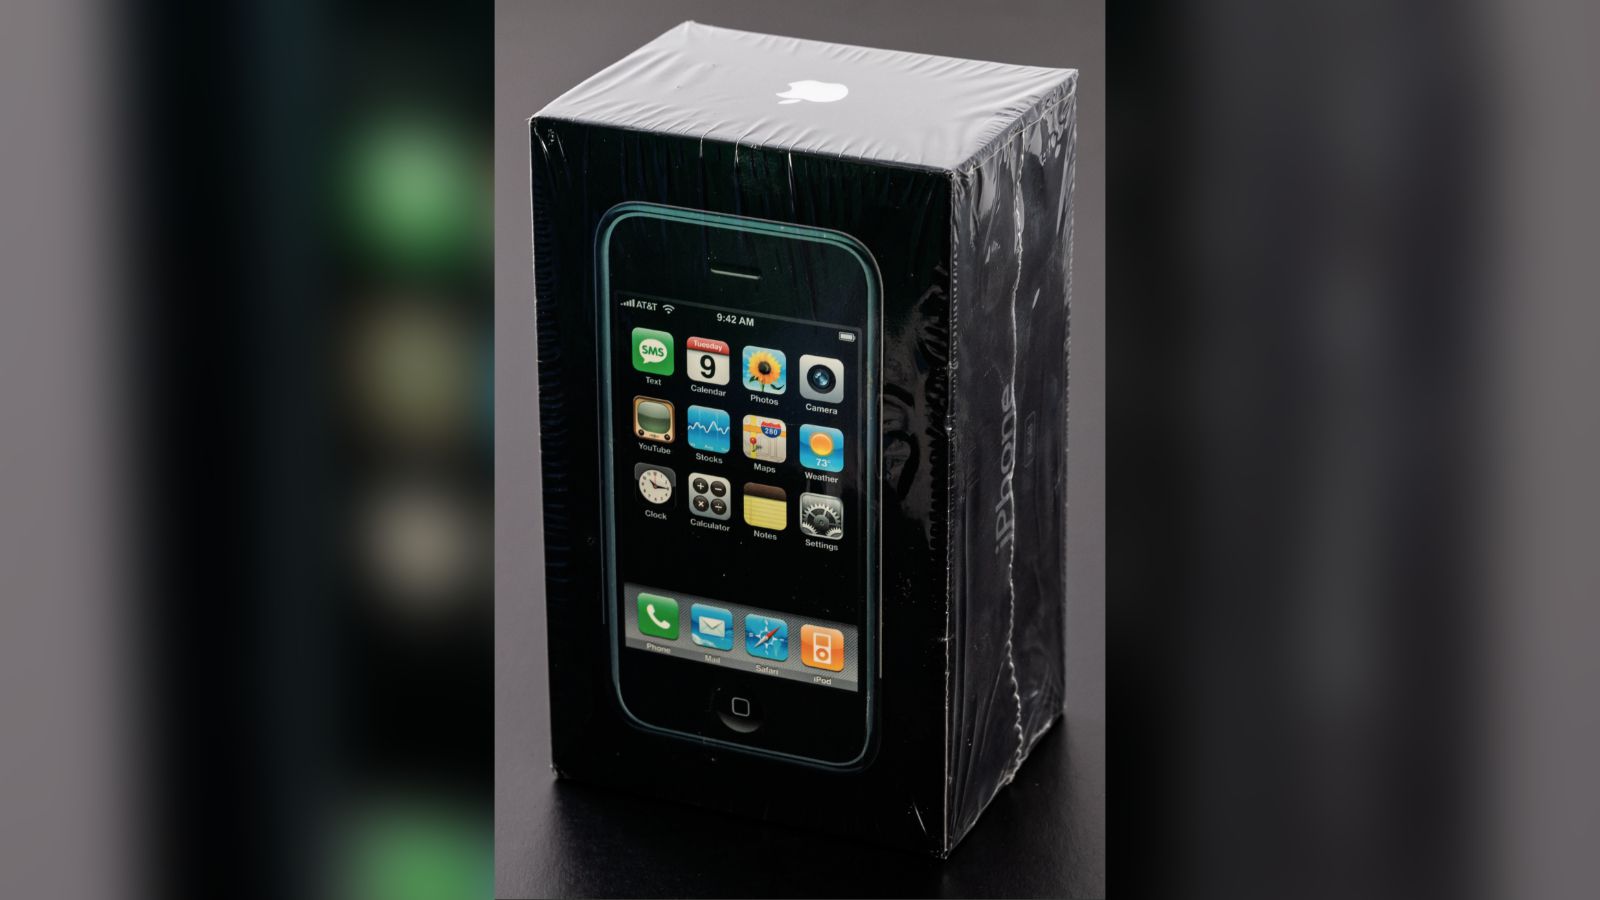 Оригинальный iPhone в заводской упаковке продали на аукционе за 55 000 долларов